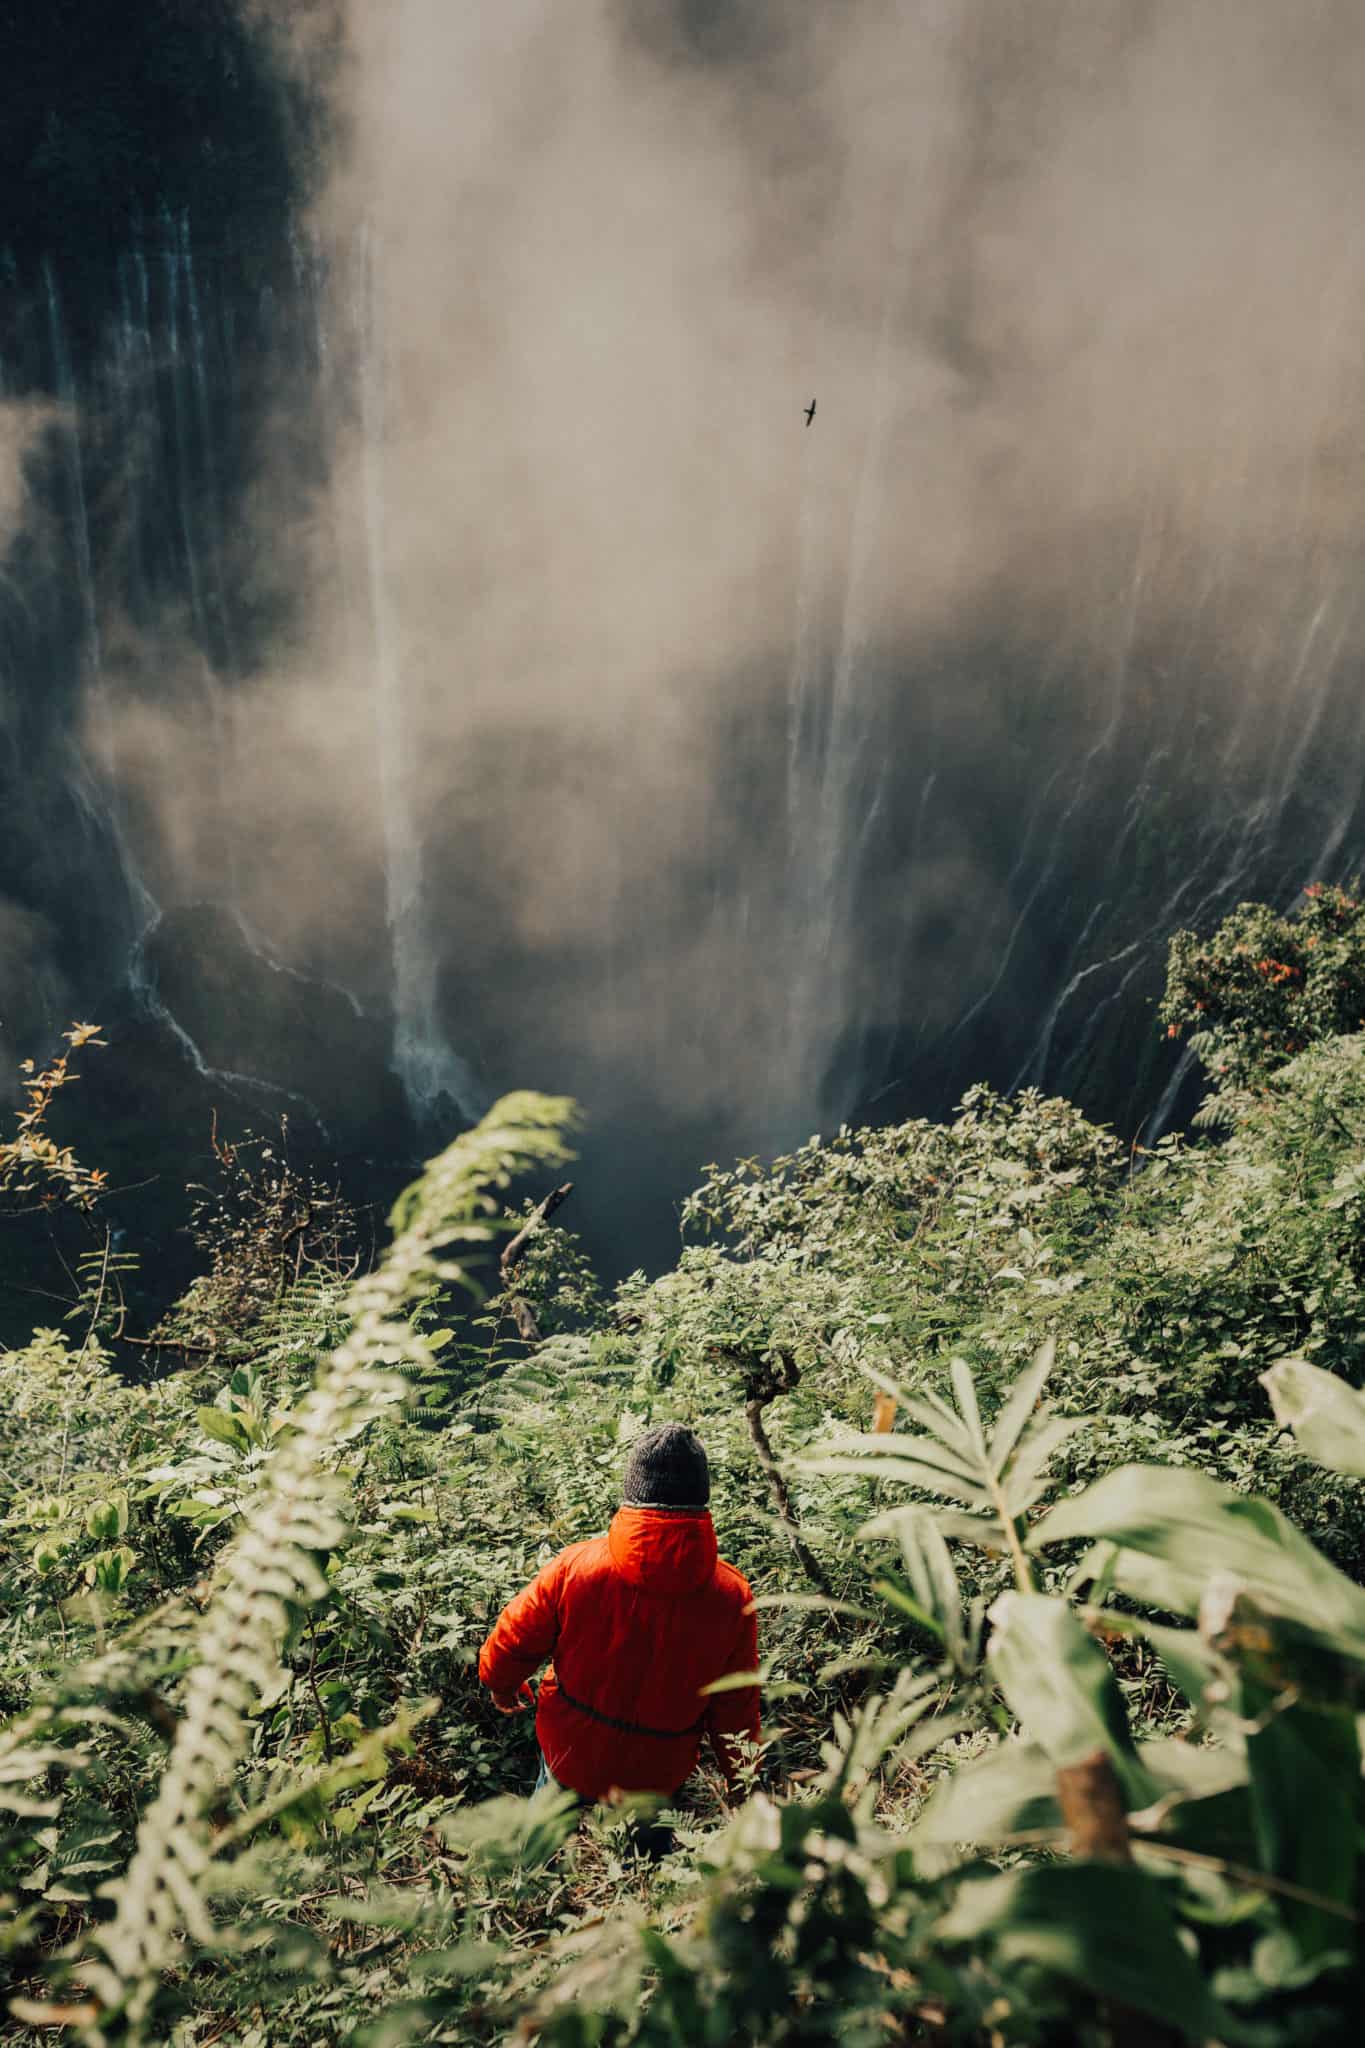 Zahirii standing in from of Tumapk Sewu Waterfall